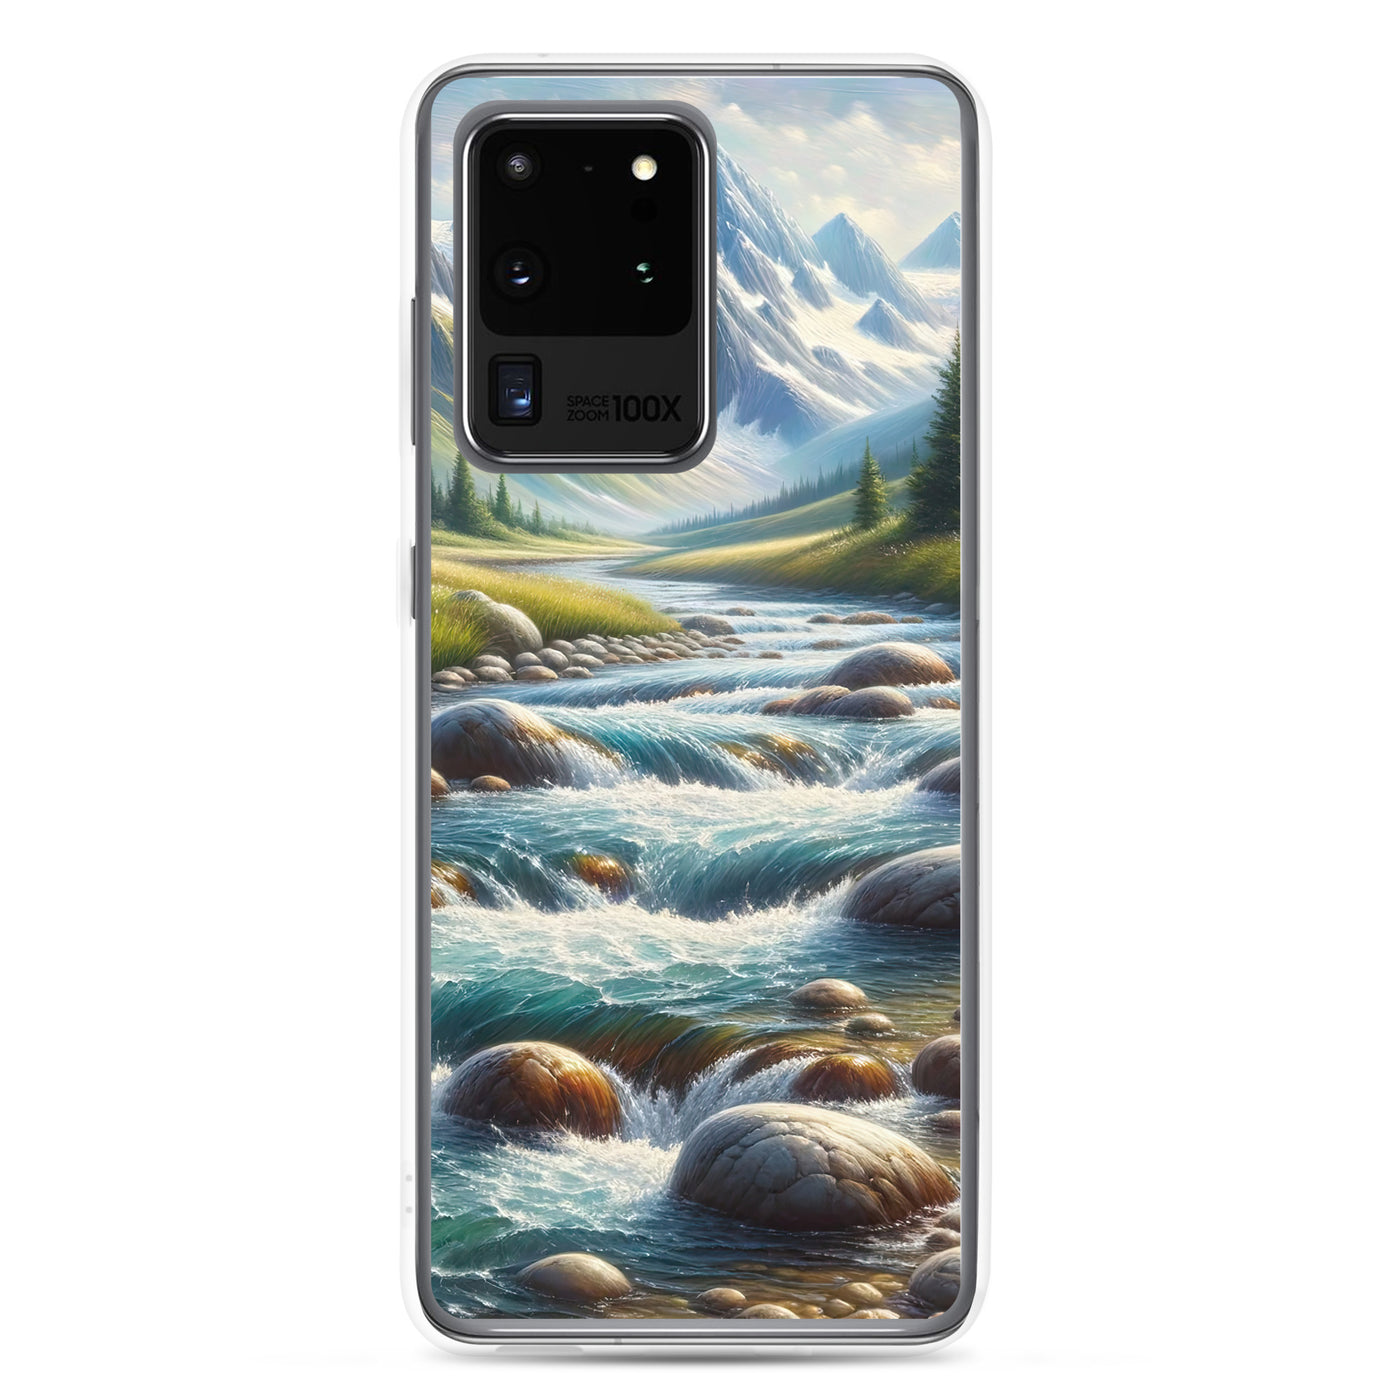 Ölgemälde eines Gebirgsbachs durch felsige Landschaft - Samsung Schutzhülle (durchsichtig) berge xxx yyy zzz Samsung Galaxy S20 Ultra